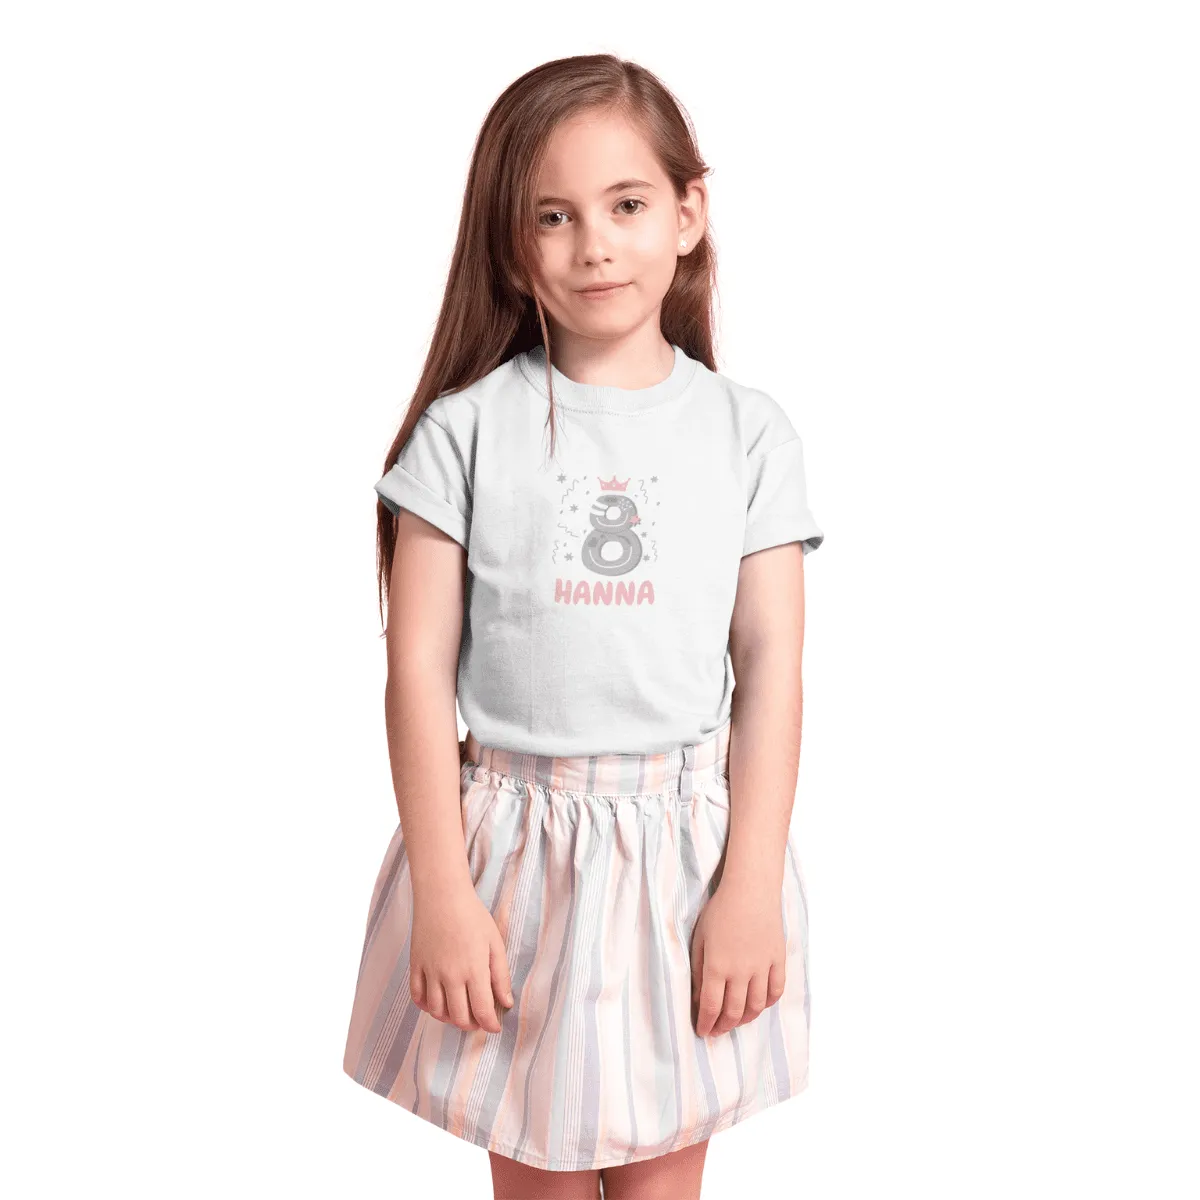 Kinder T-Shirt 8. Geburtstag mit Wunschname und Alter | Design Krone | Mädchen